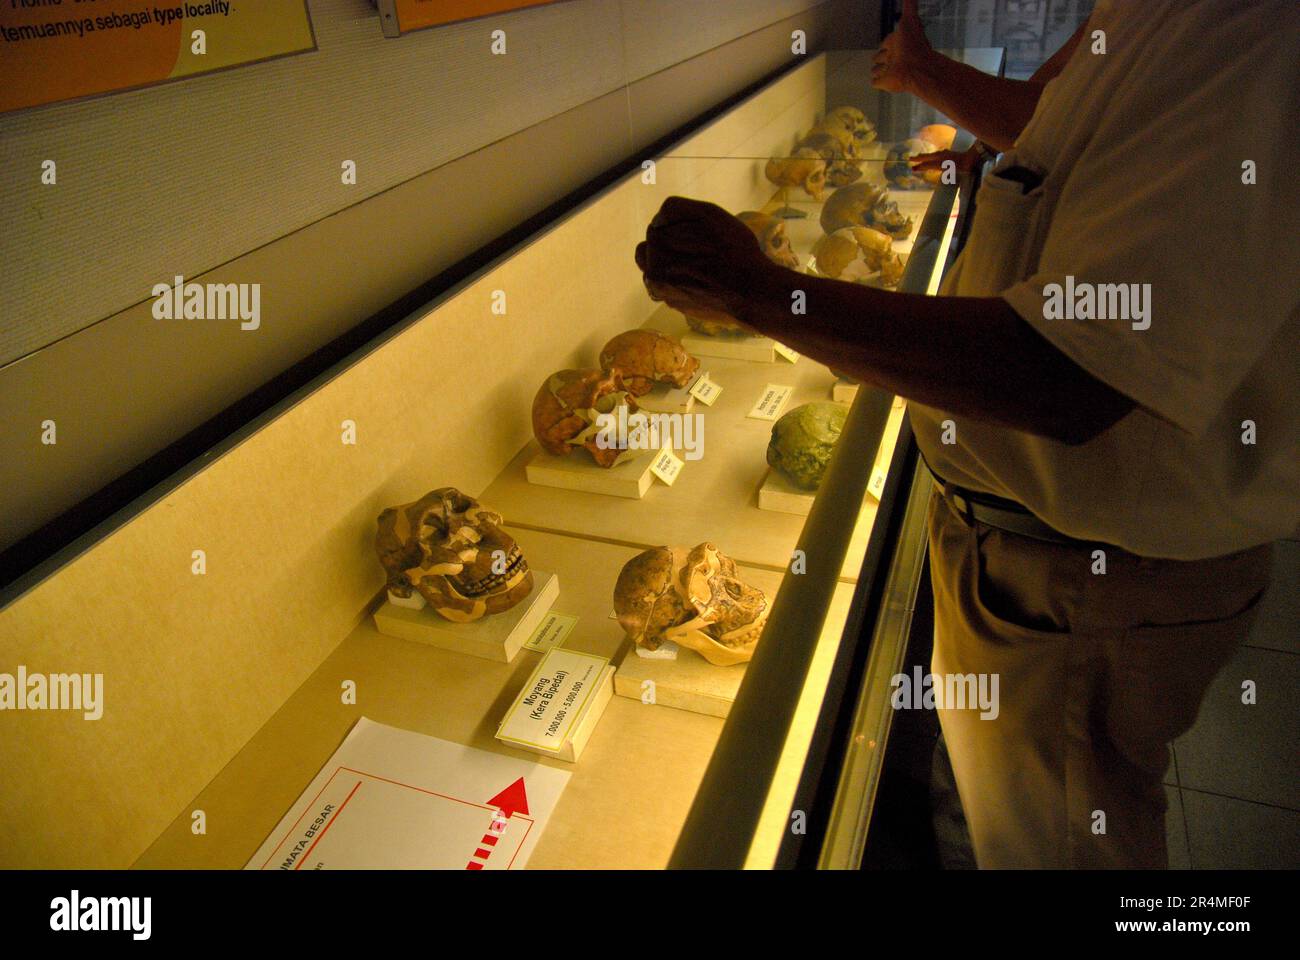 Professor für Paläontologie-Forschung Fachroel Aziz steht vor einem Museumsschrank, in dem die Rekonstruktionen von hominiden Schädeln platziert werden, während er im Museum Geologi (Geologiemuseum) in Bandung, West-Java, Indonesien, Erklärungen gibt. Stockfoto